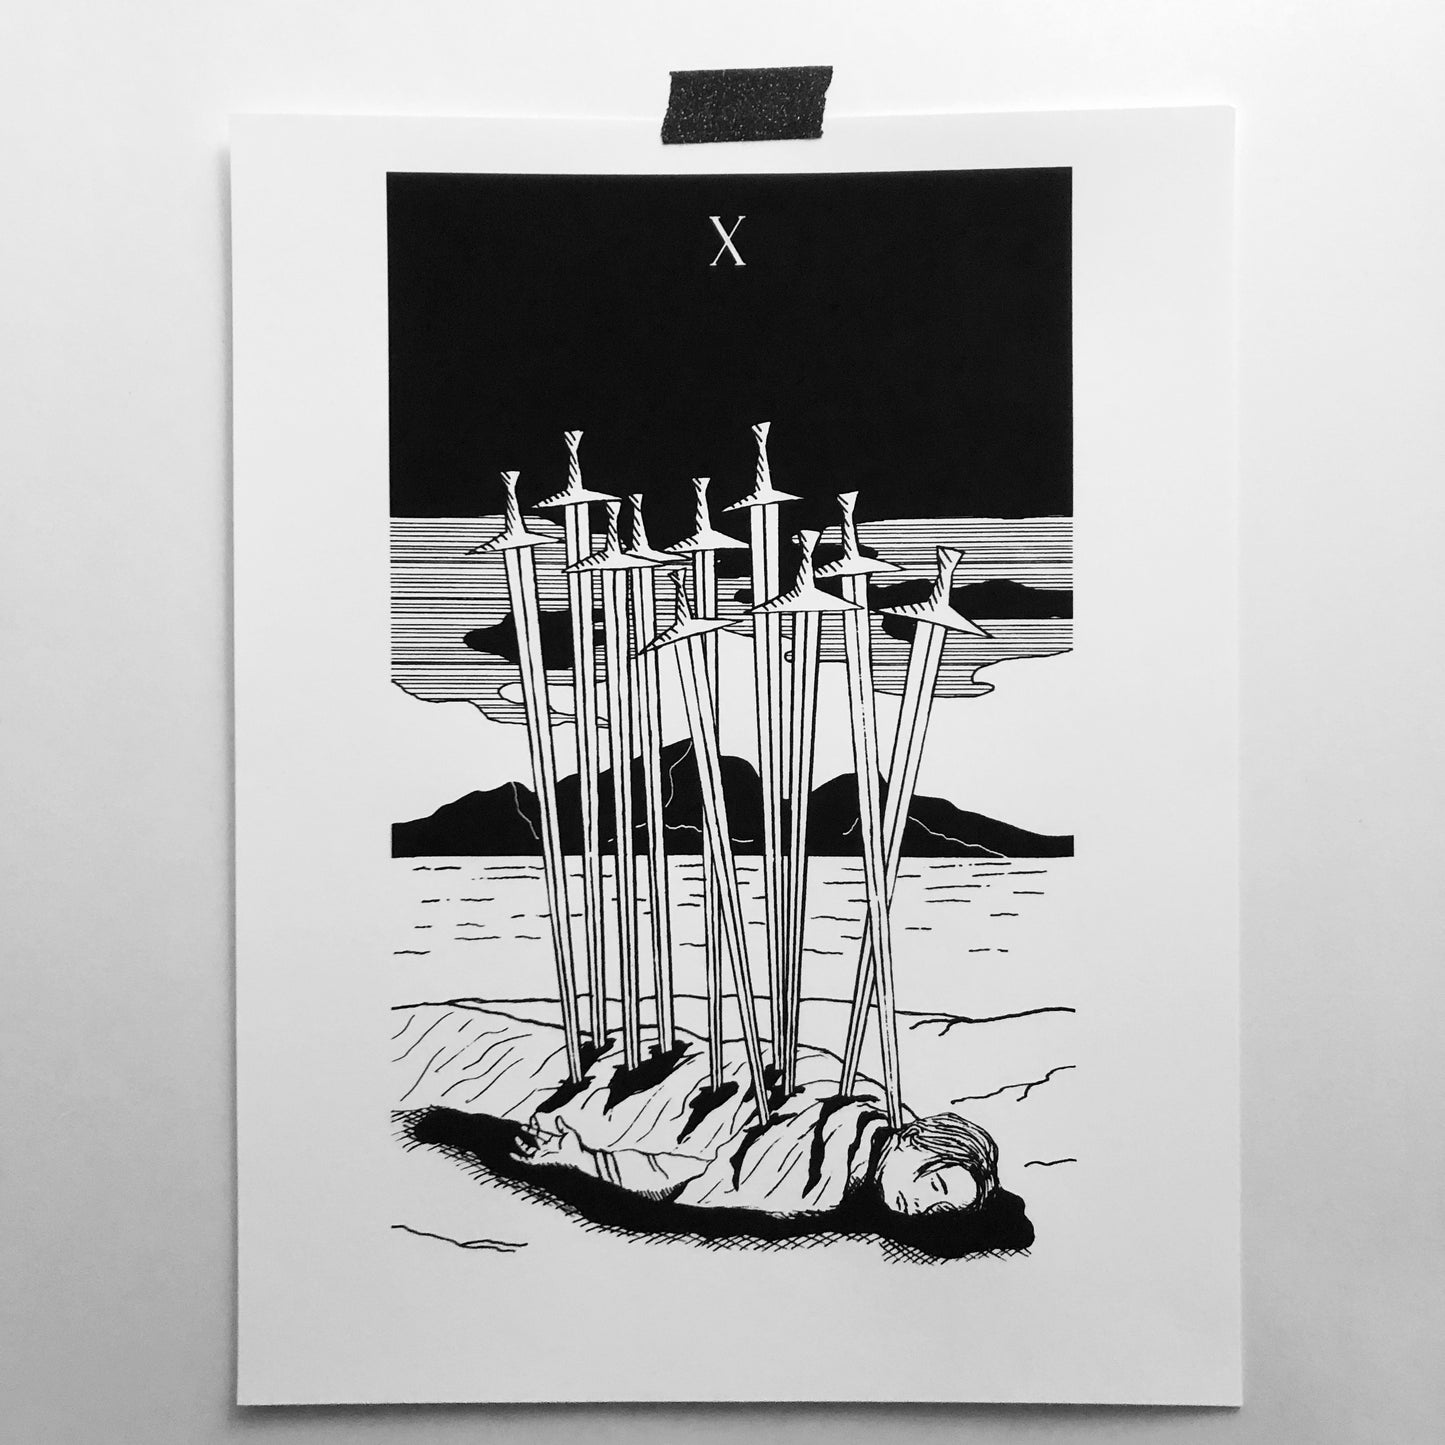 X of Swords 8.5"x11" Print